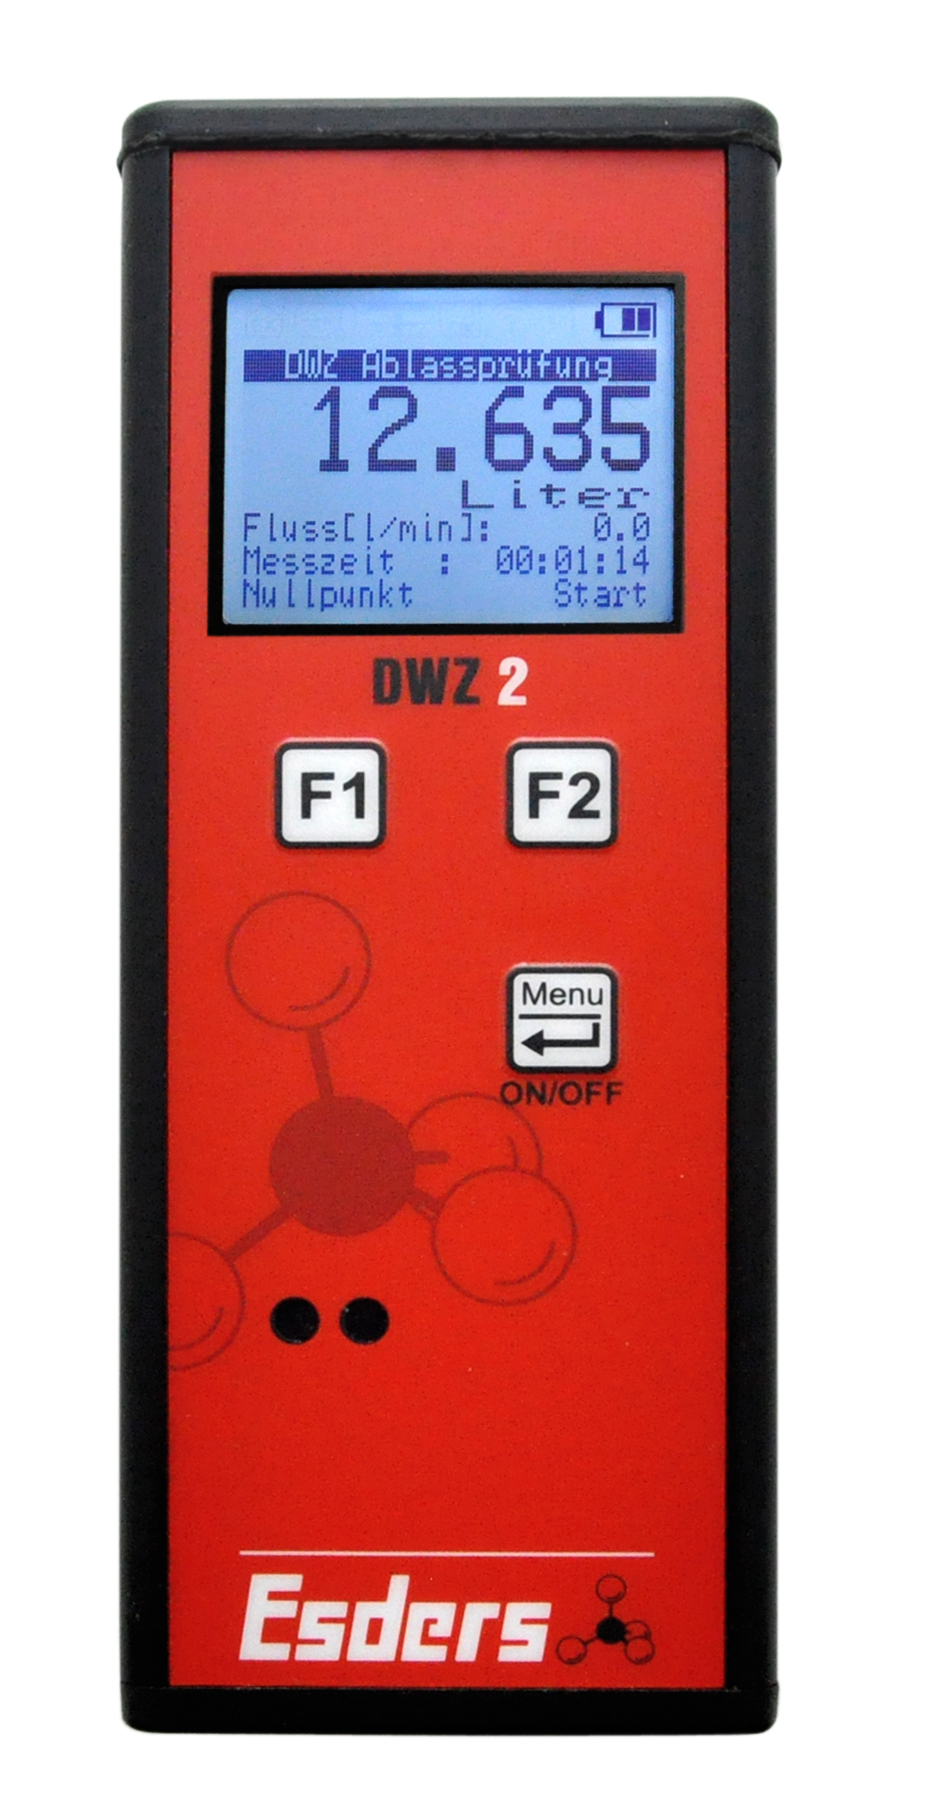 Digital water flowmeter DWZ 2